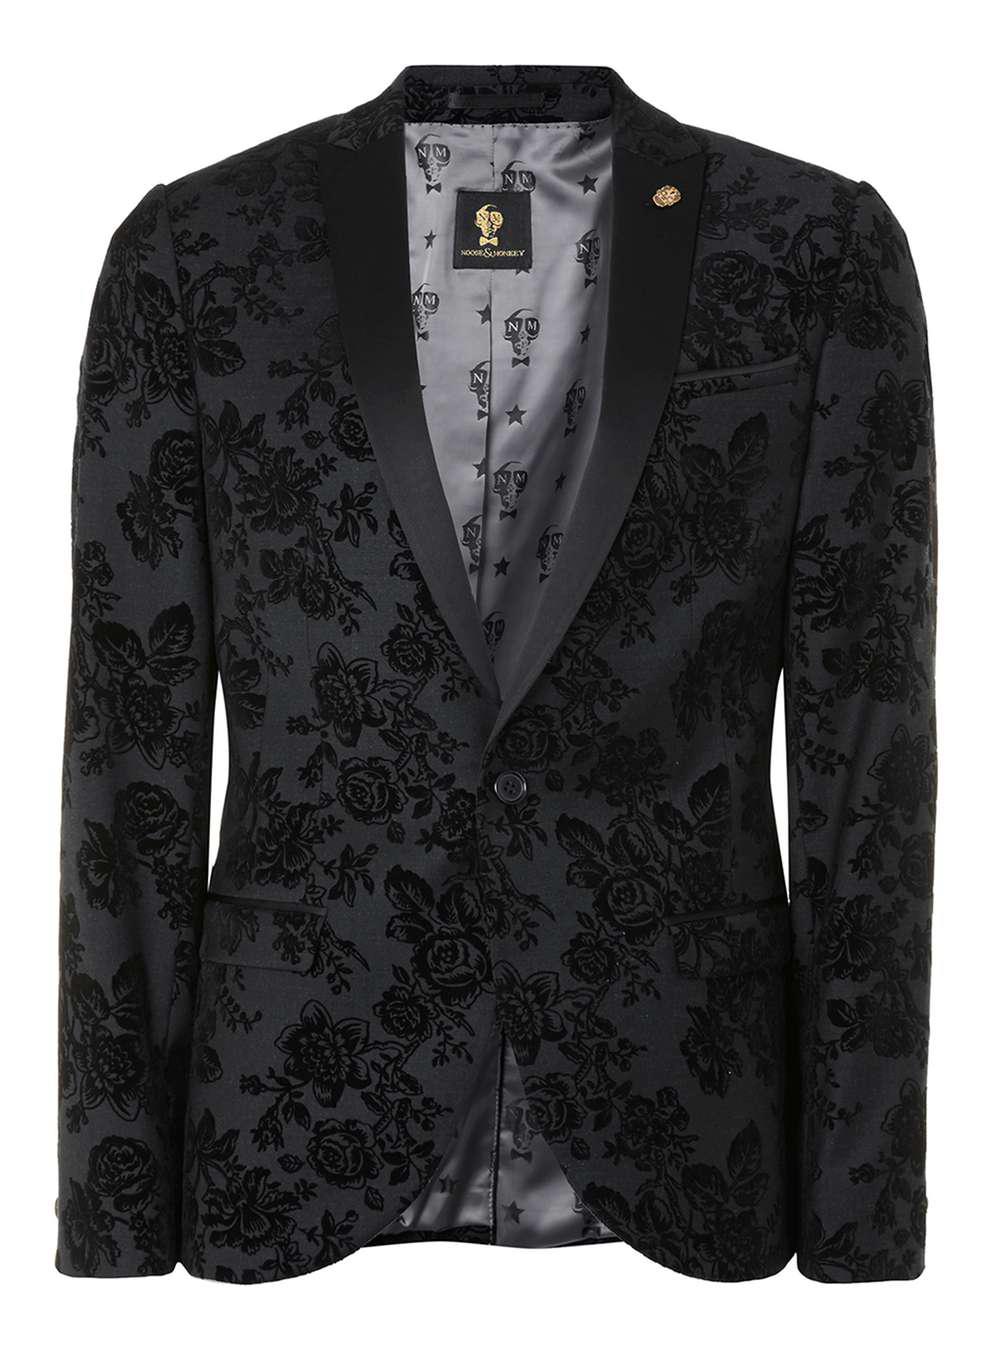 TOPMAN Wool Noose & Monkey Grey Textured Floral Print Suit Jacket in ...